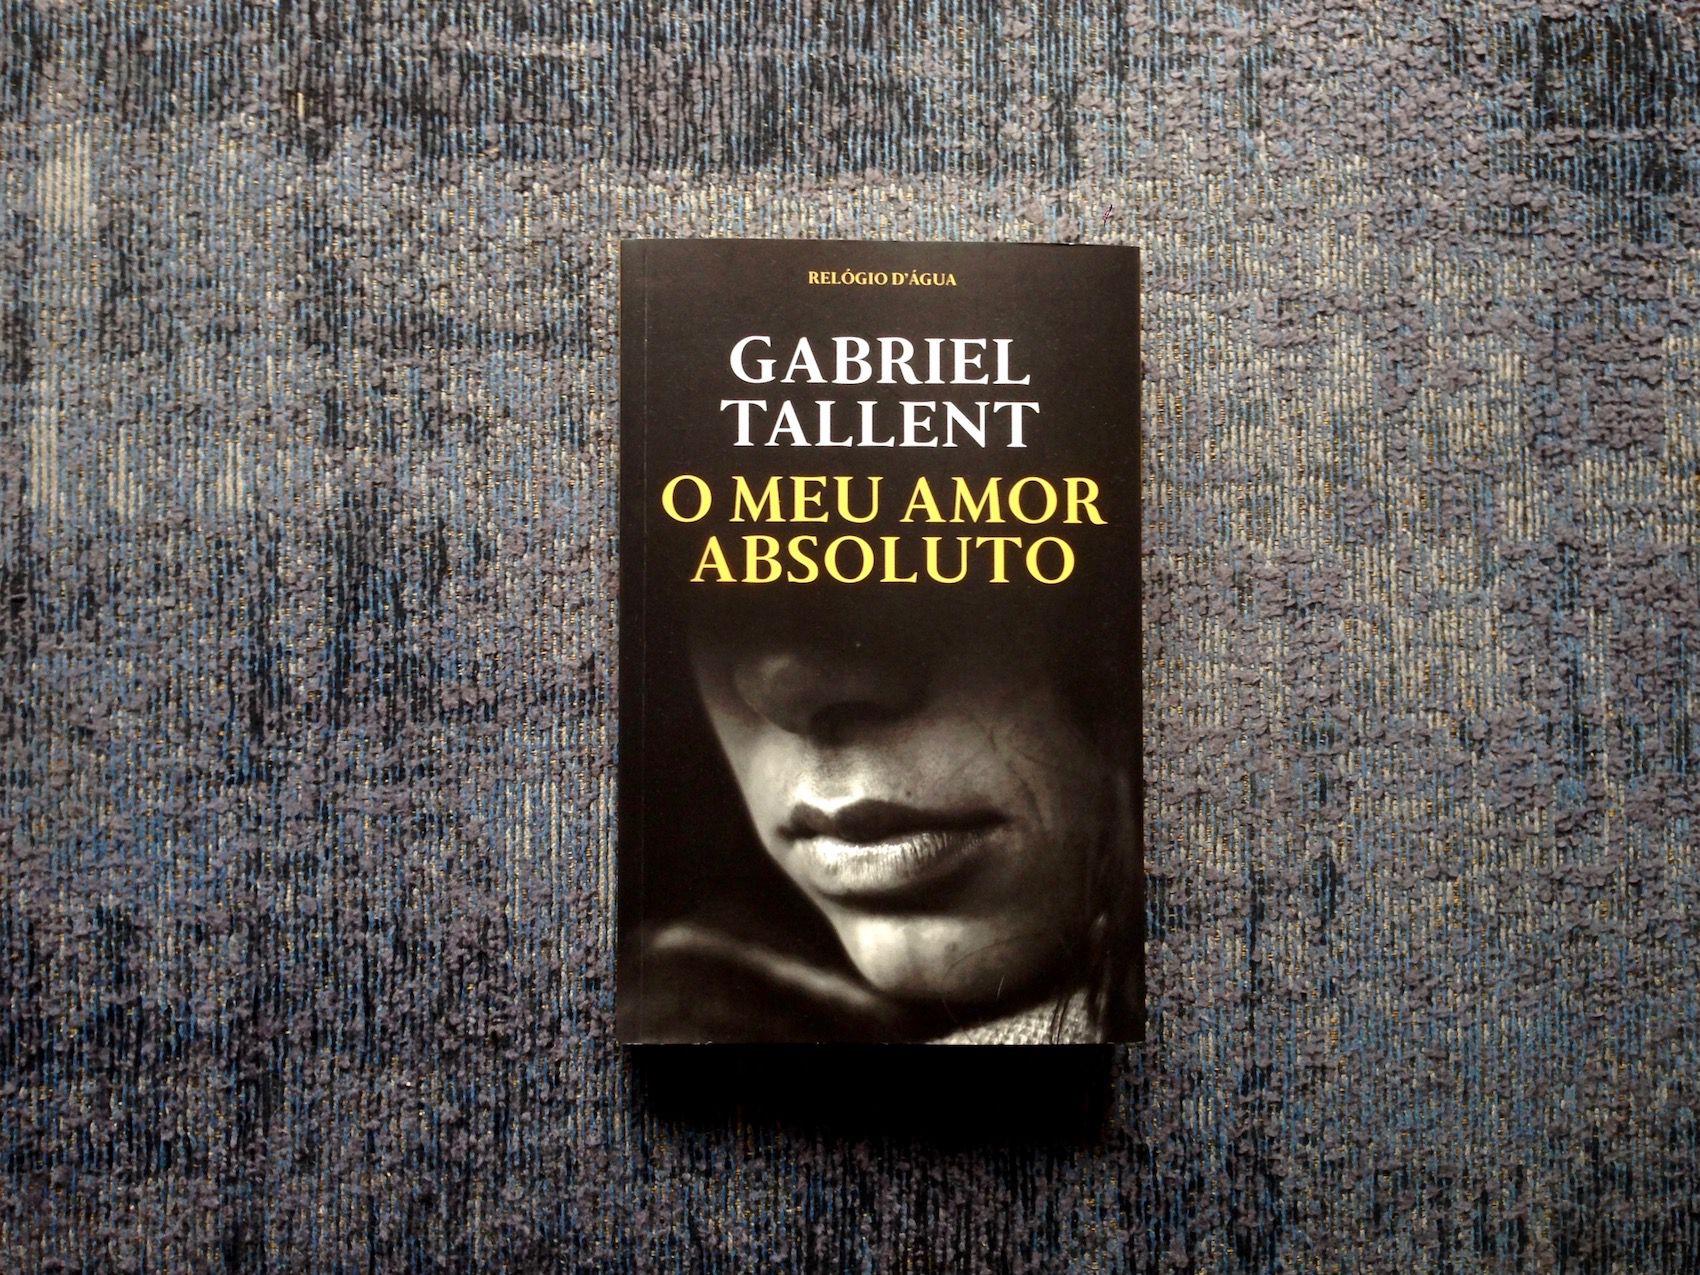 Gabriel Tallent traz-nos a crua dureza do abuso, em ‘O Meu Amor Absoluto’